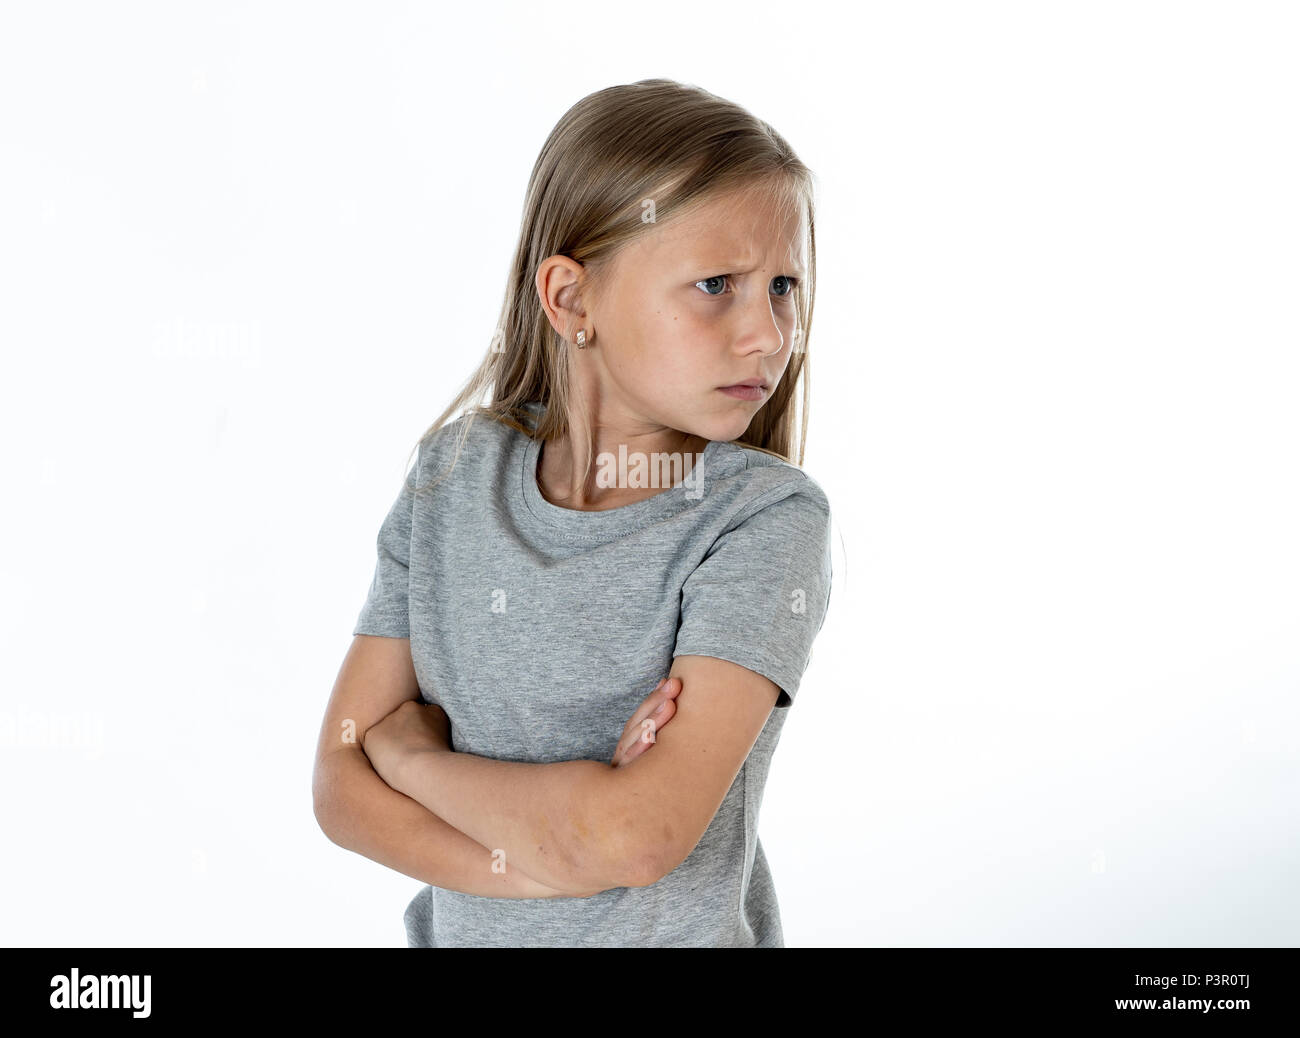 Portrait von wütend, traurig und deprimiert kleine blonde Mädchen auf weißem Hintergrund. Kinder's Gesicht Emotionen Konzept Stockfoto